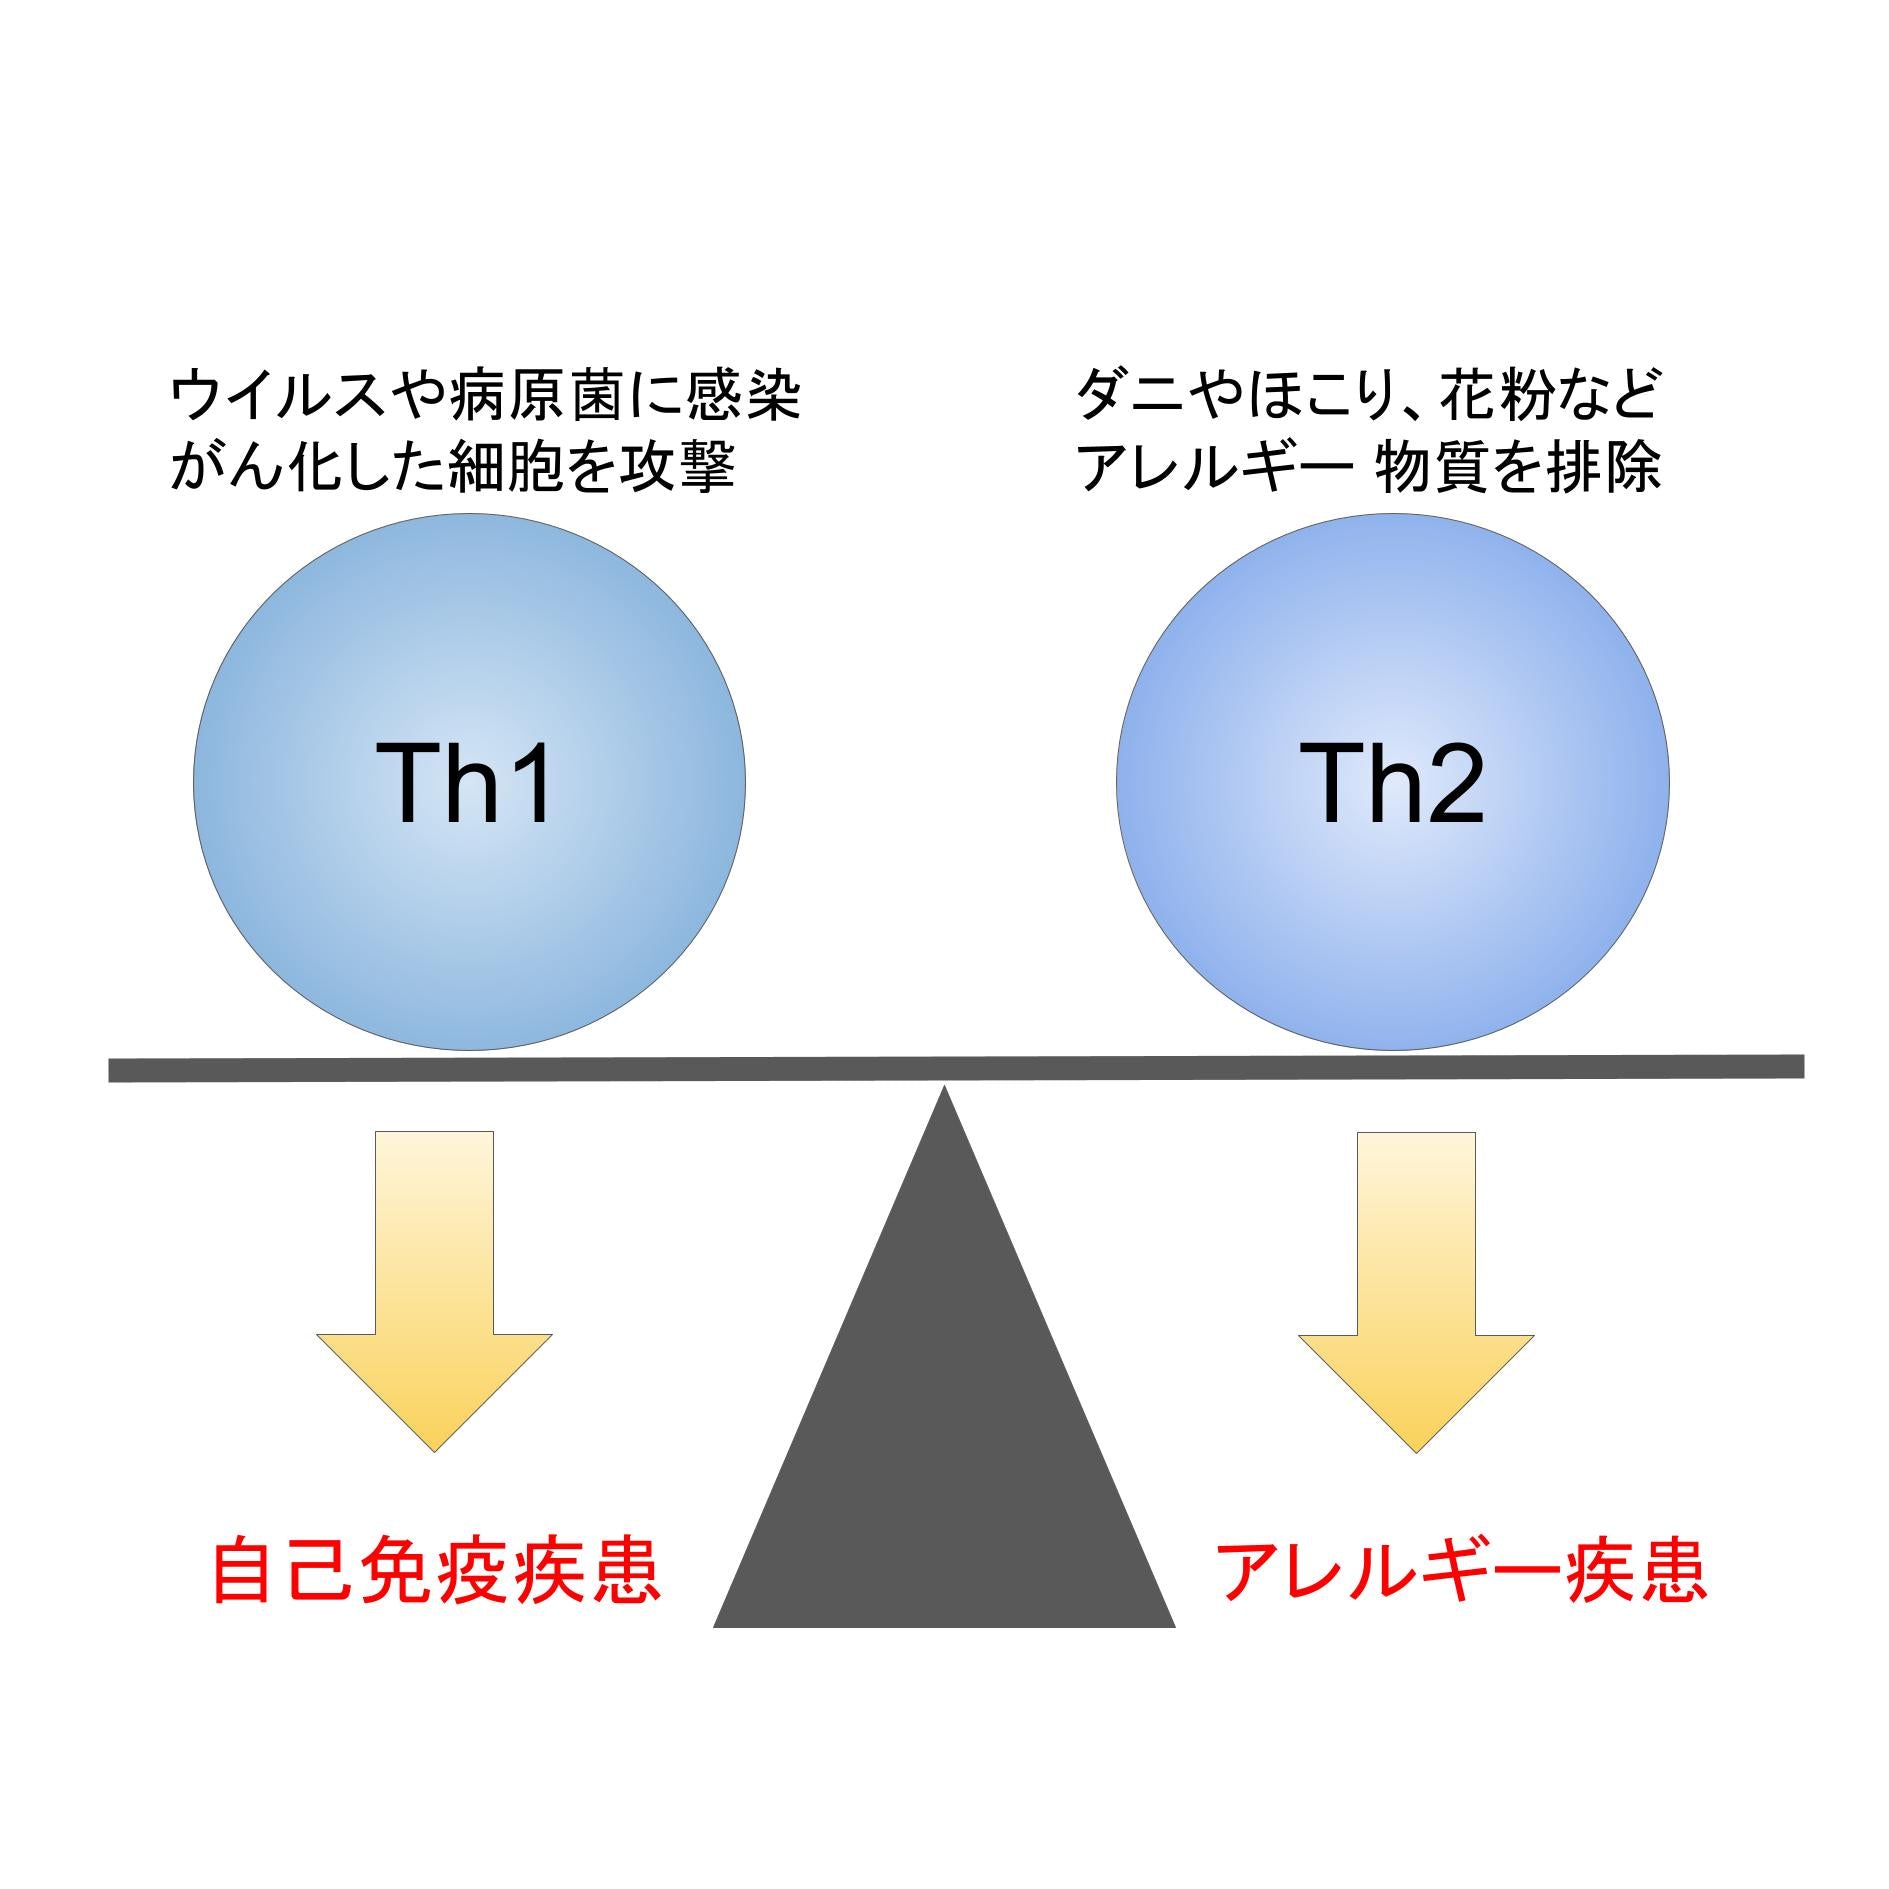 Th1とTh2のバランスについてのイメージ図